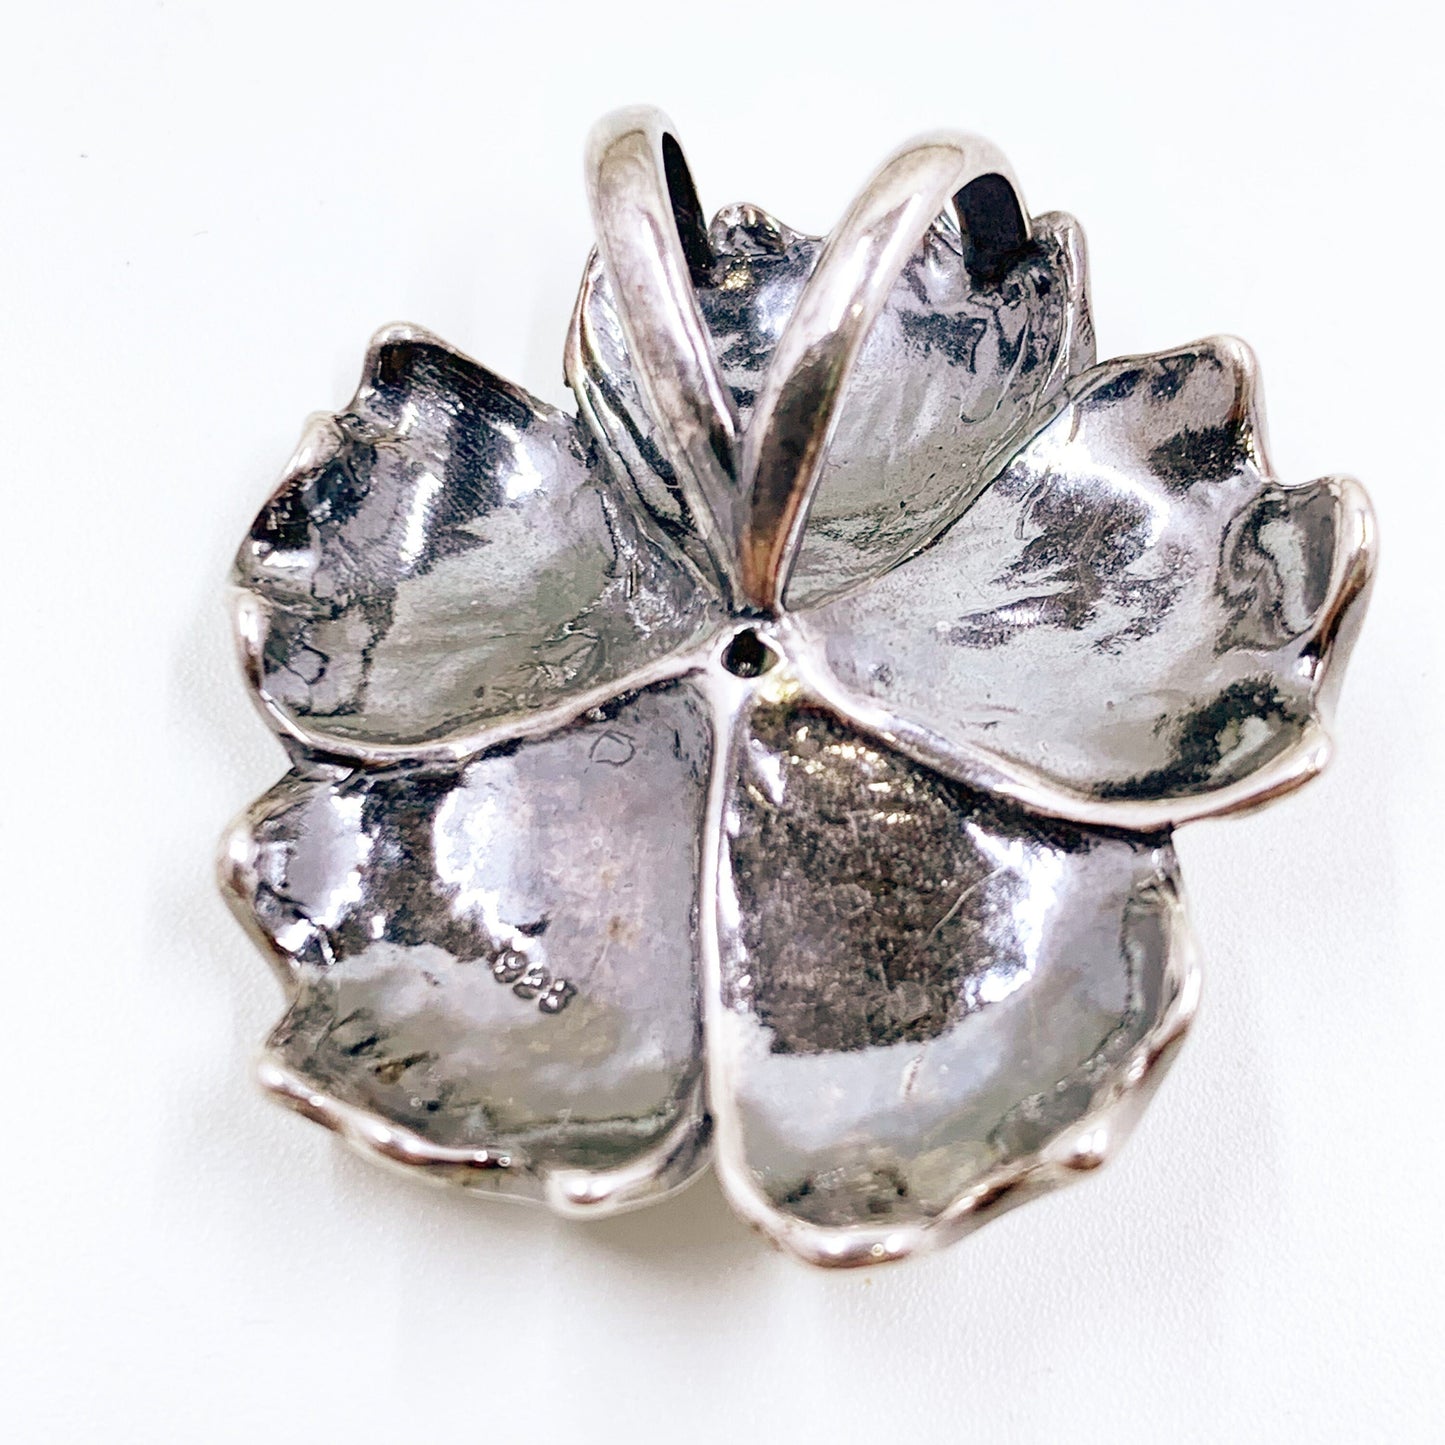 Vintage Silver Flower Pendant | Large Floral Pendant